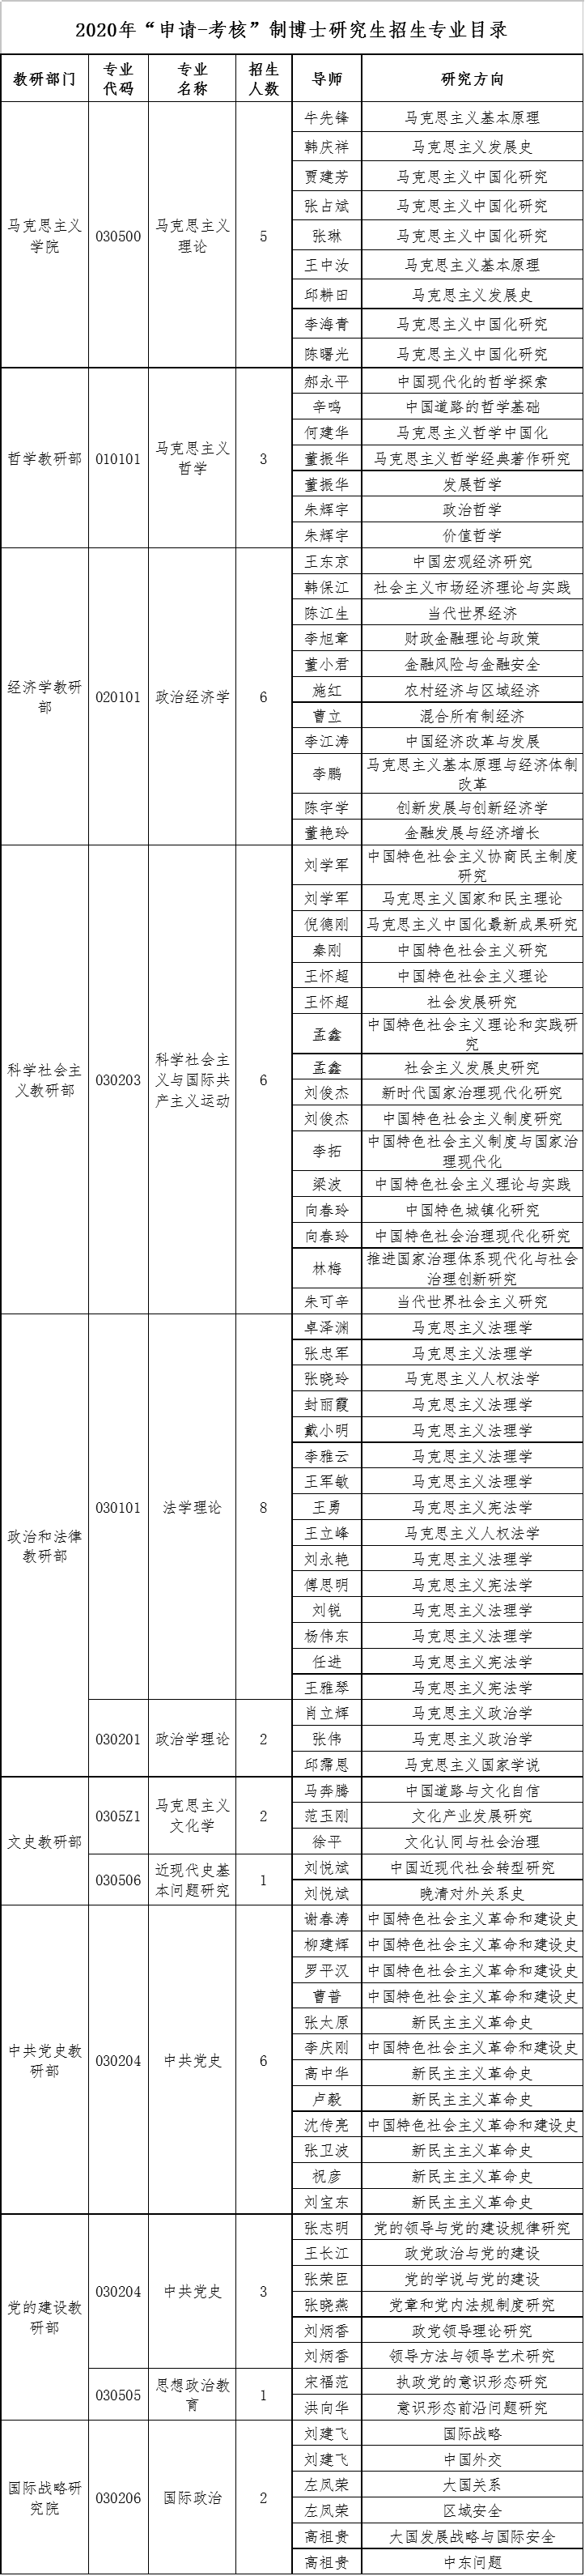 中央党校2020年申请考核制博士研究生招生专业目录